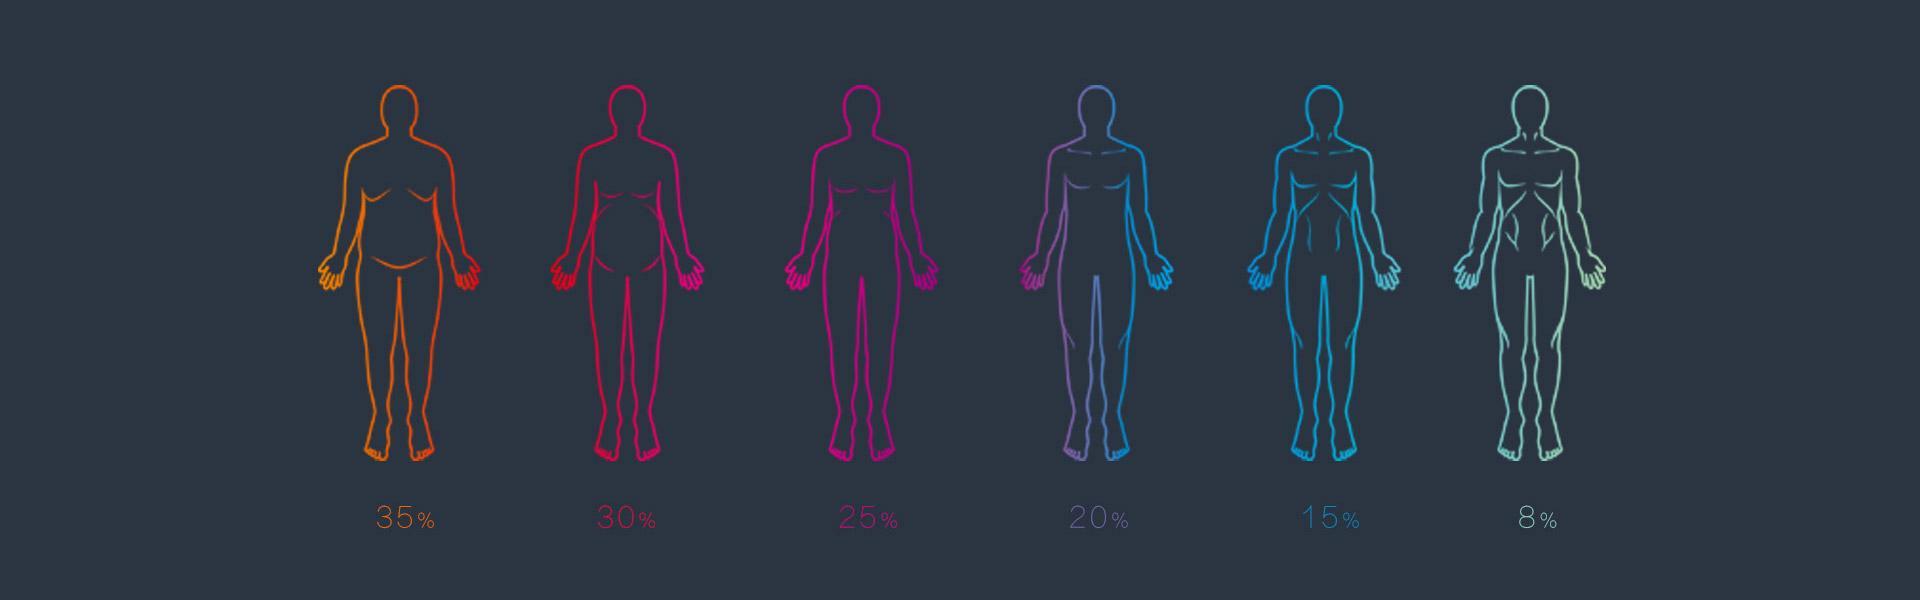 Porcentaje de grasa corporal y forma del cuerpo